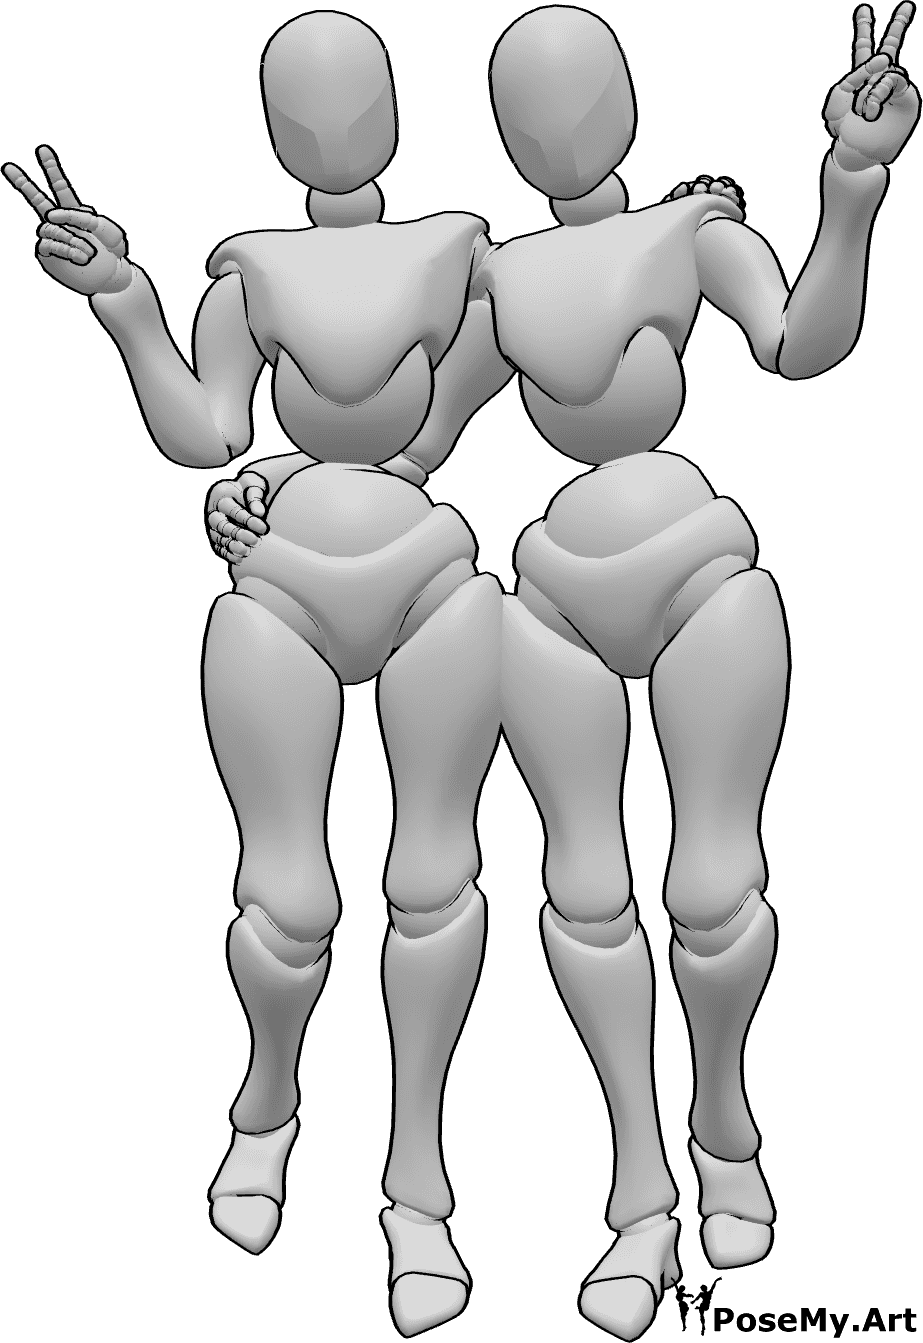 Referência de poses- Mulheres em pose de sinal de paz - Duas mulheres estão de pé, abraçam-se e fazem o sinal da paz